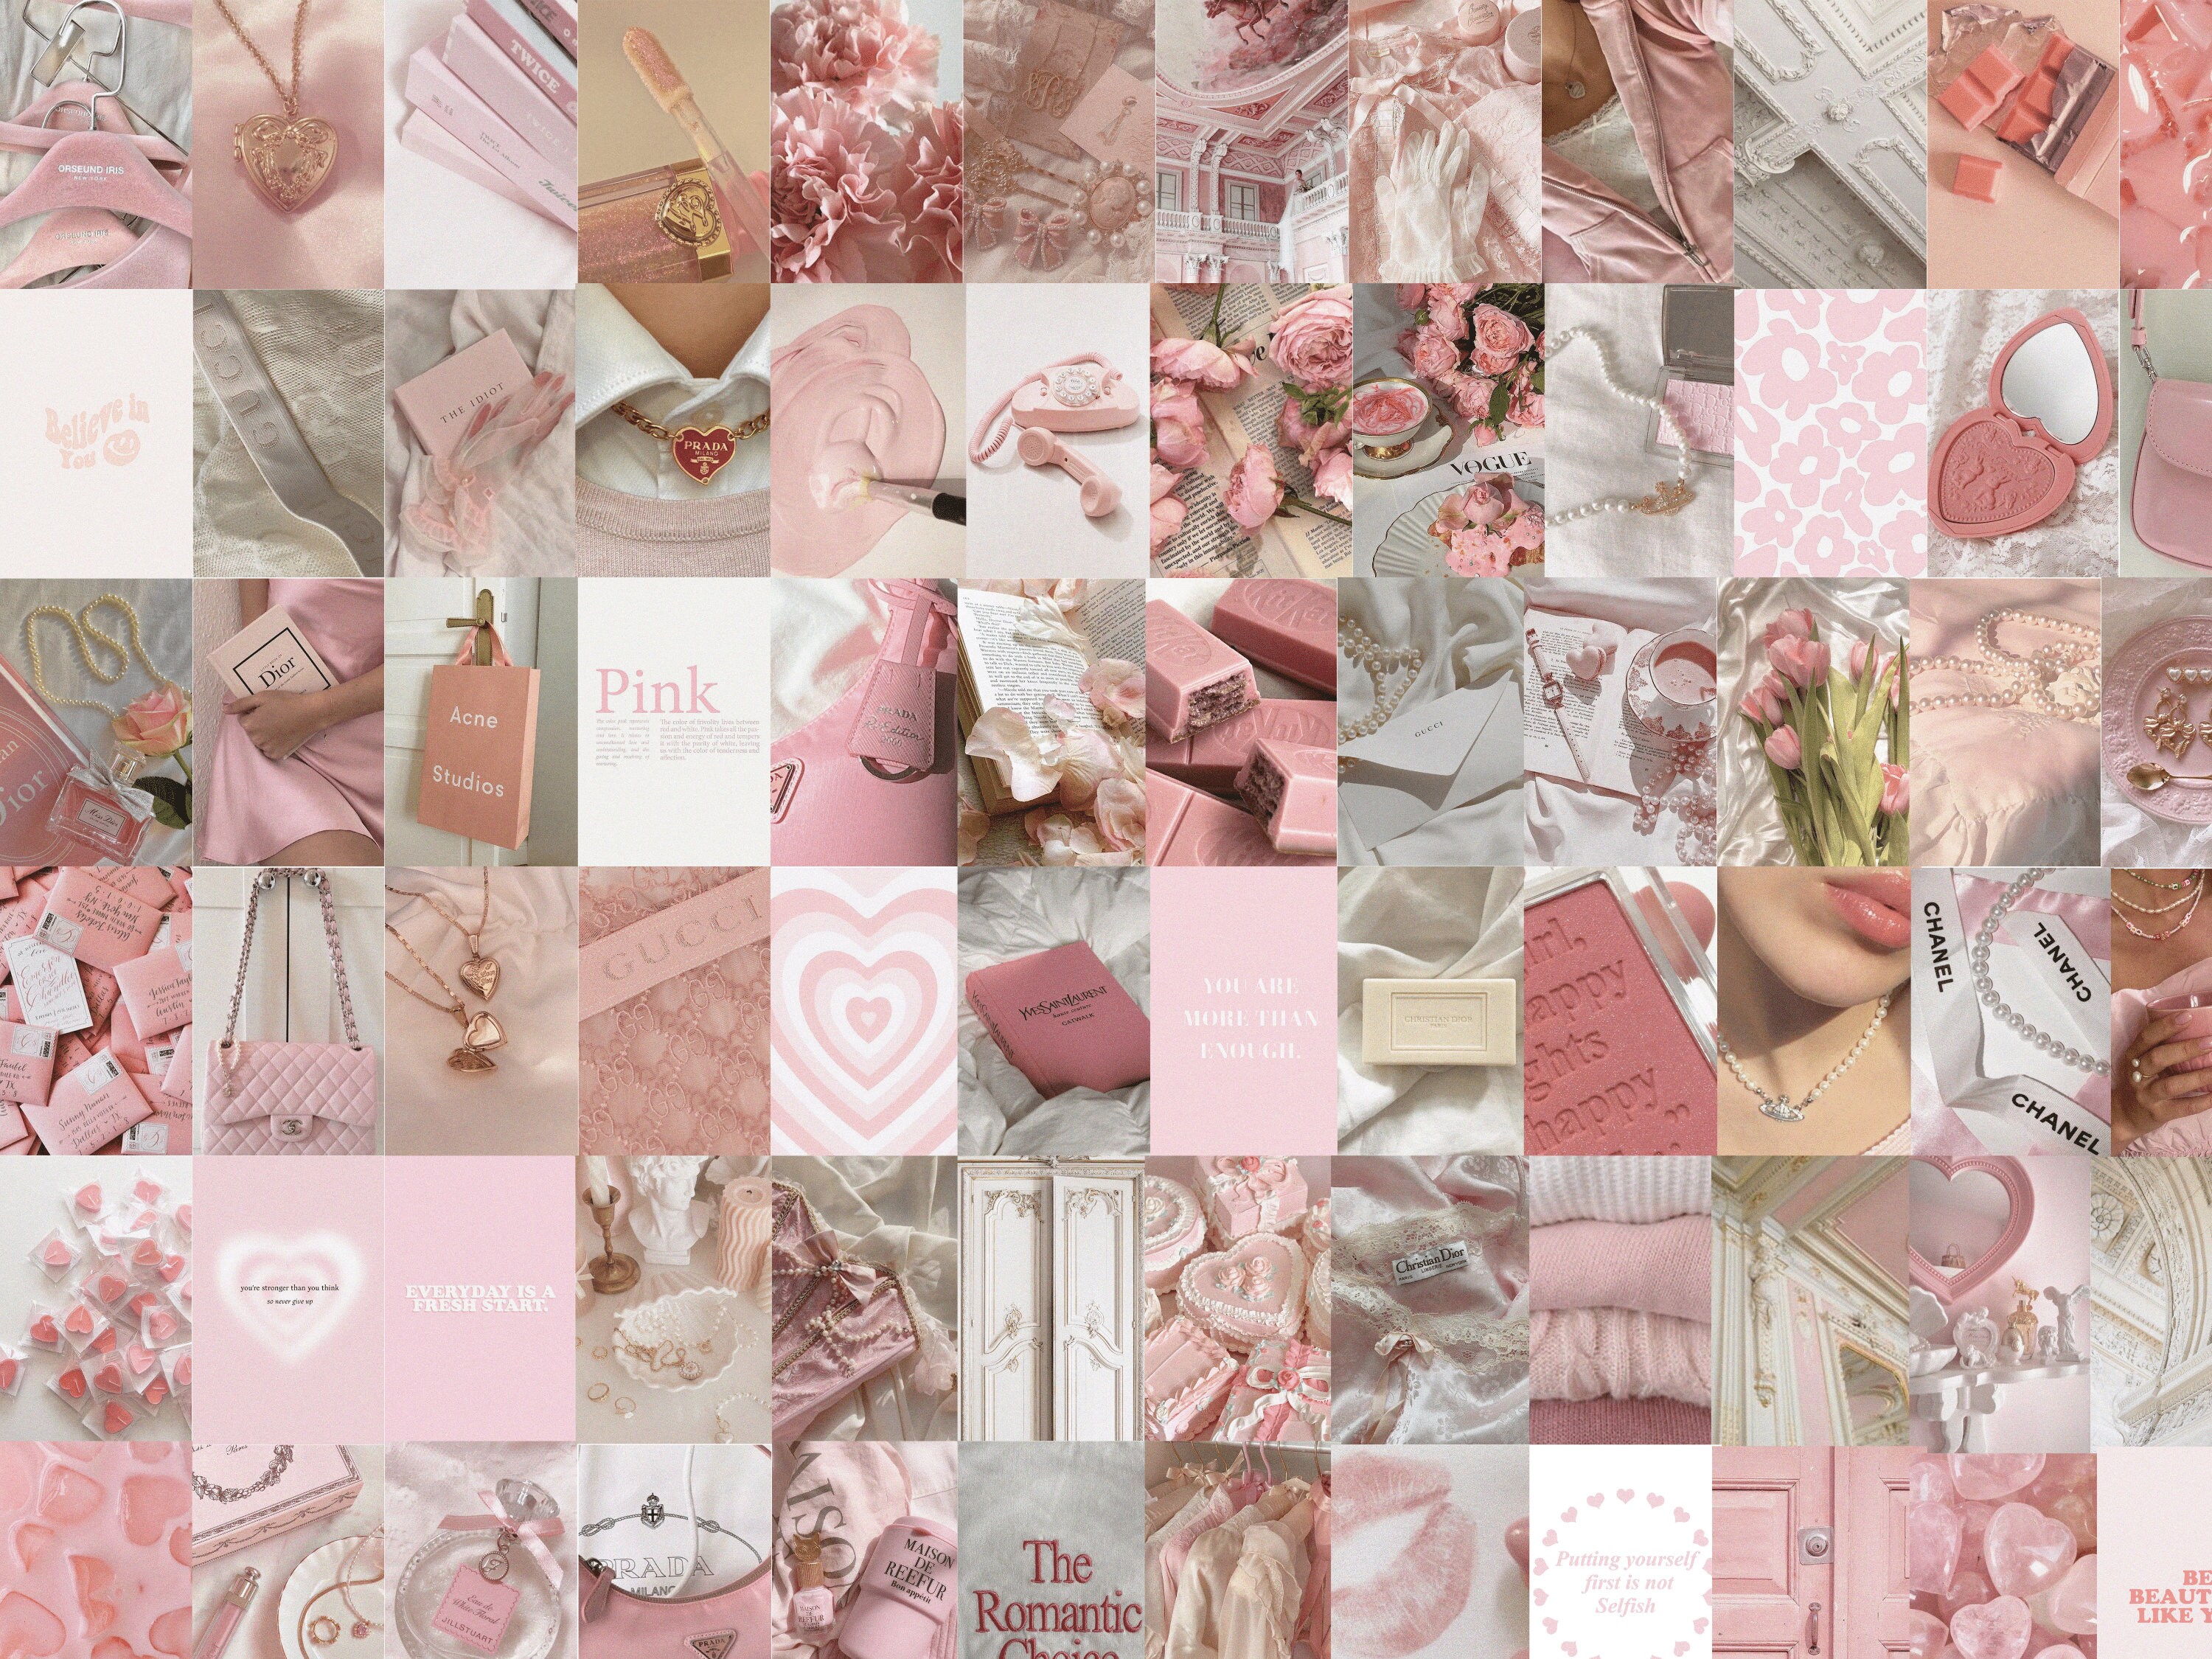 Táo bạo, cá tính và vô cùng thẩm mỹ - bộ treo tường màu hồng và kem thẩm mỹ là lựa chọn hoàn hảo để thể hiện gu thẩm mỹ của bạn. Hình ảnh độc đáo, tạo điểm nhấn cho không gian sống của bạn. Hãy tải về ngay hôm nay chẳng hạn!